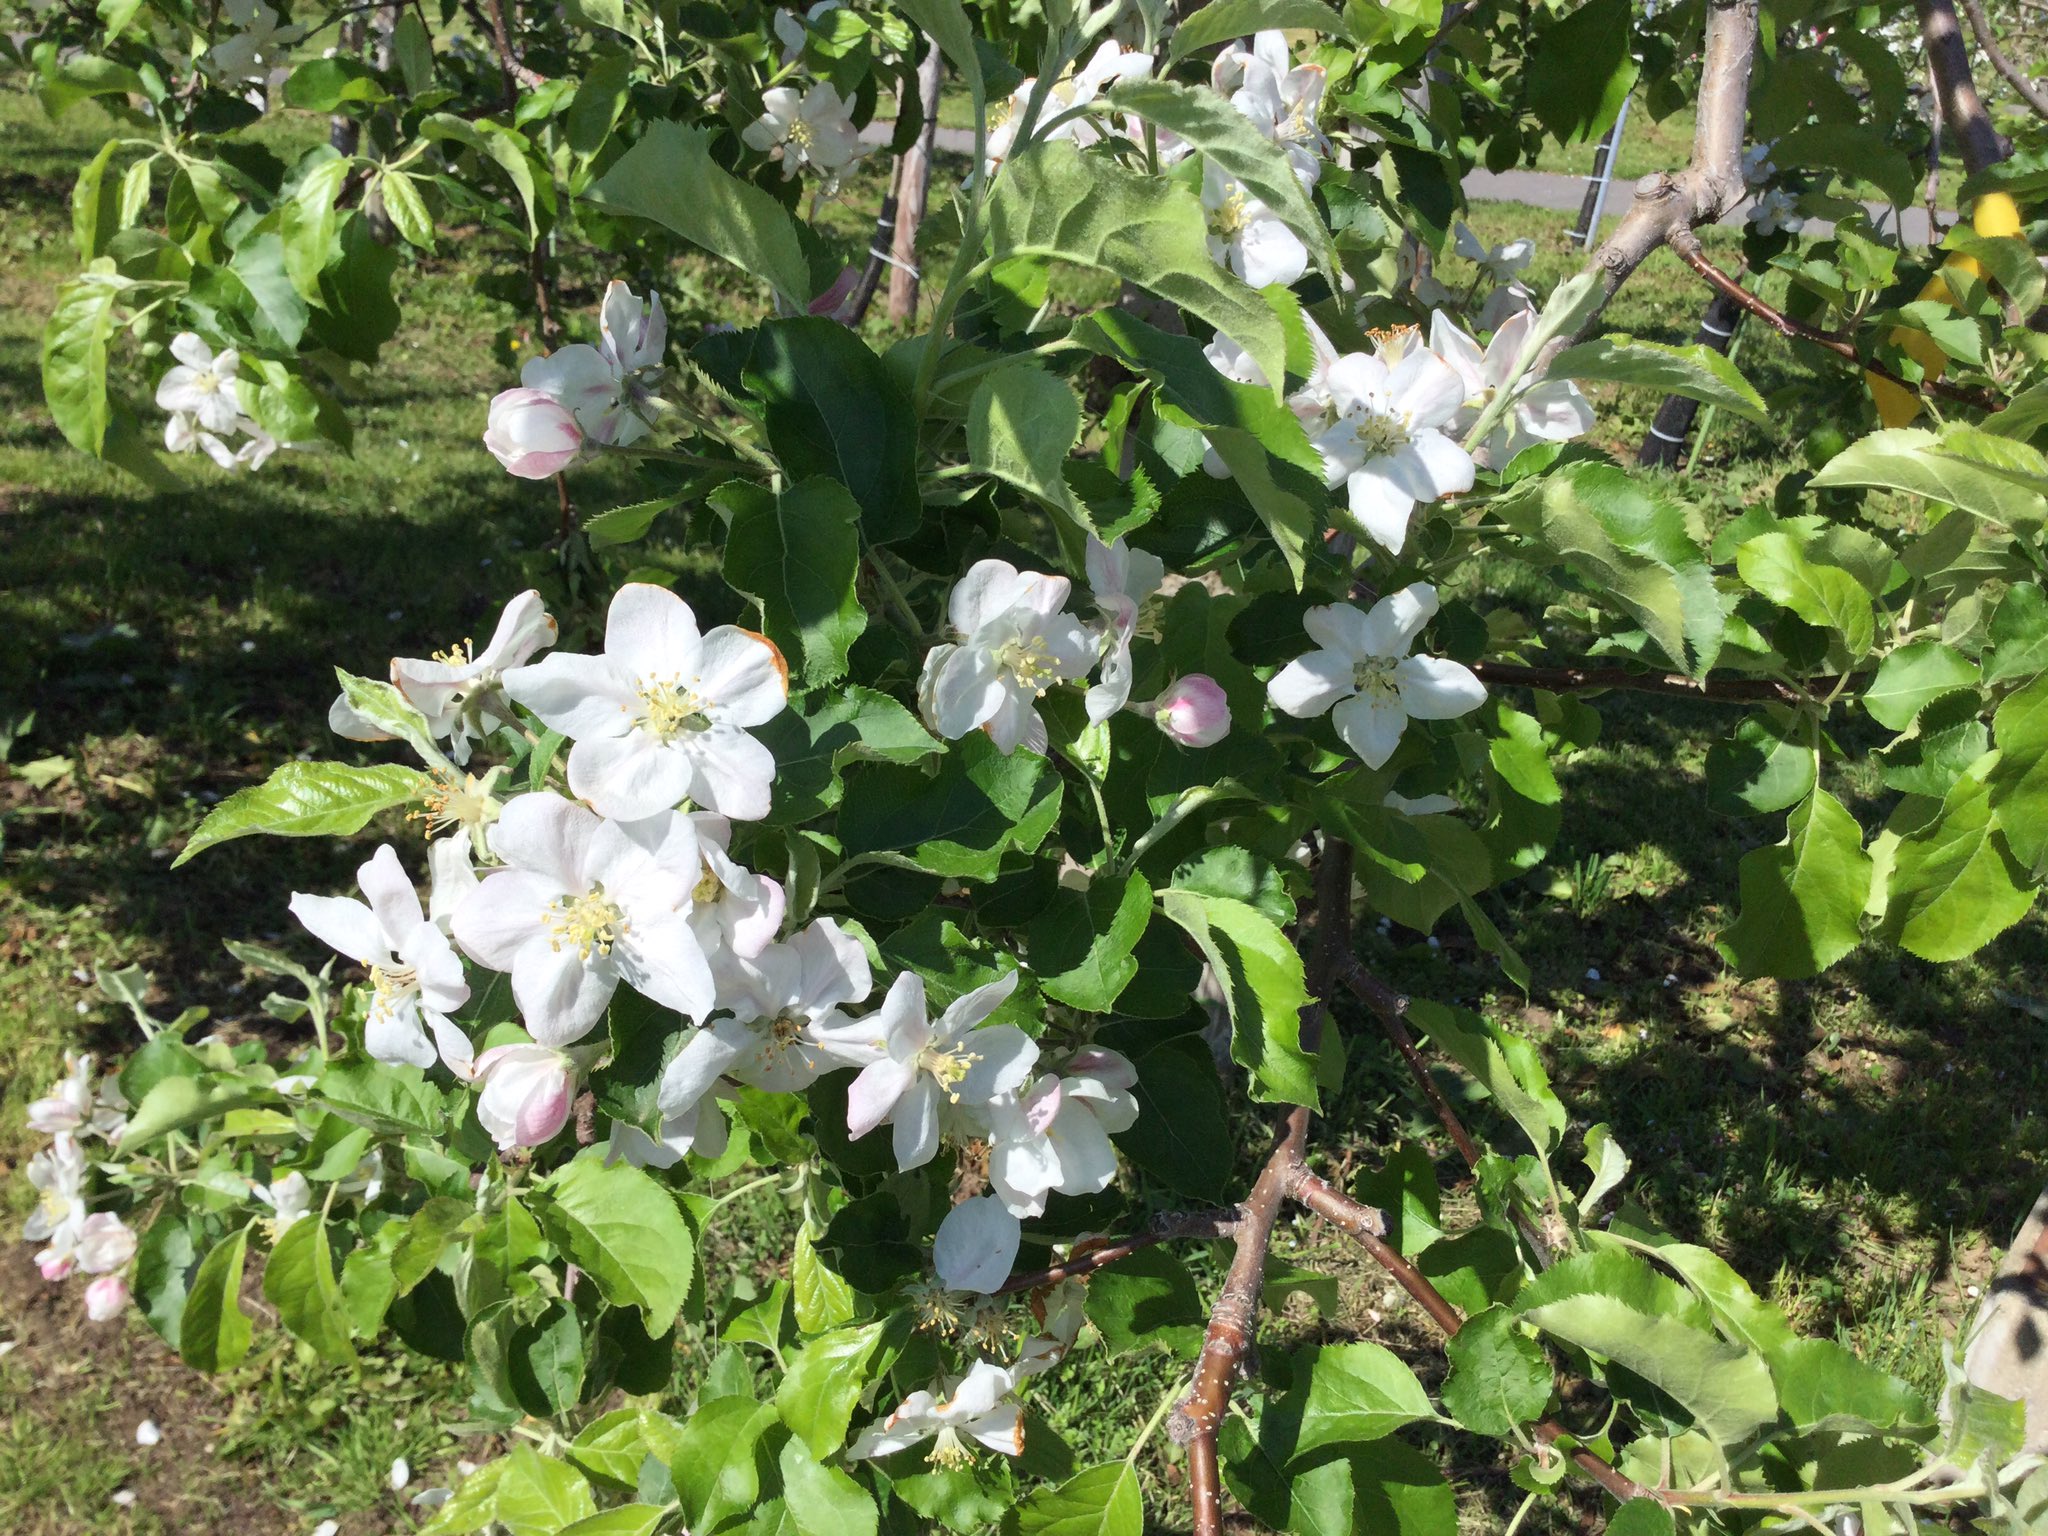 りんご公園 こんにちは 先日の 弘前りんご花まつり21 には多くのお客様に ご来場いただき 本当にありがとうございました りんごの花も満開で楽しんでいただけたのではと 思っています 今日のりんごの花ですが 散り始めています が まだまだ